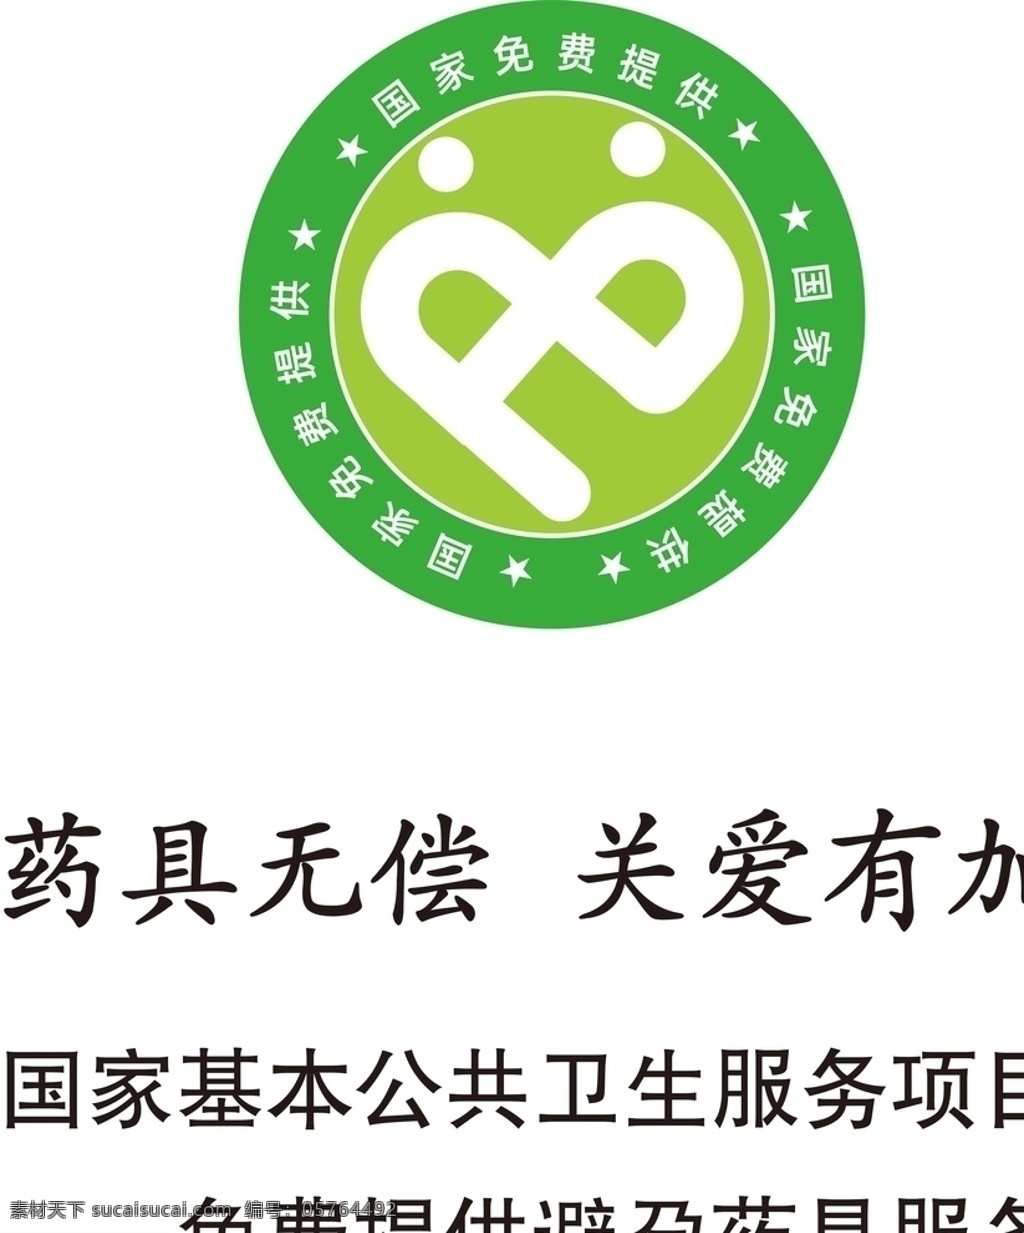 公共卫生 服务项目 logo 公共卫生服务 避孕药具服务 基本公共卫生 卫生标志 标志图标 公共标识标志